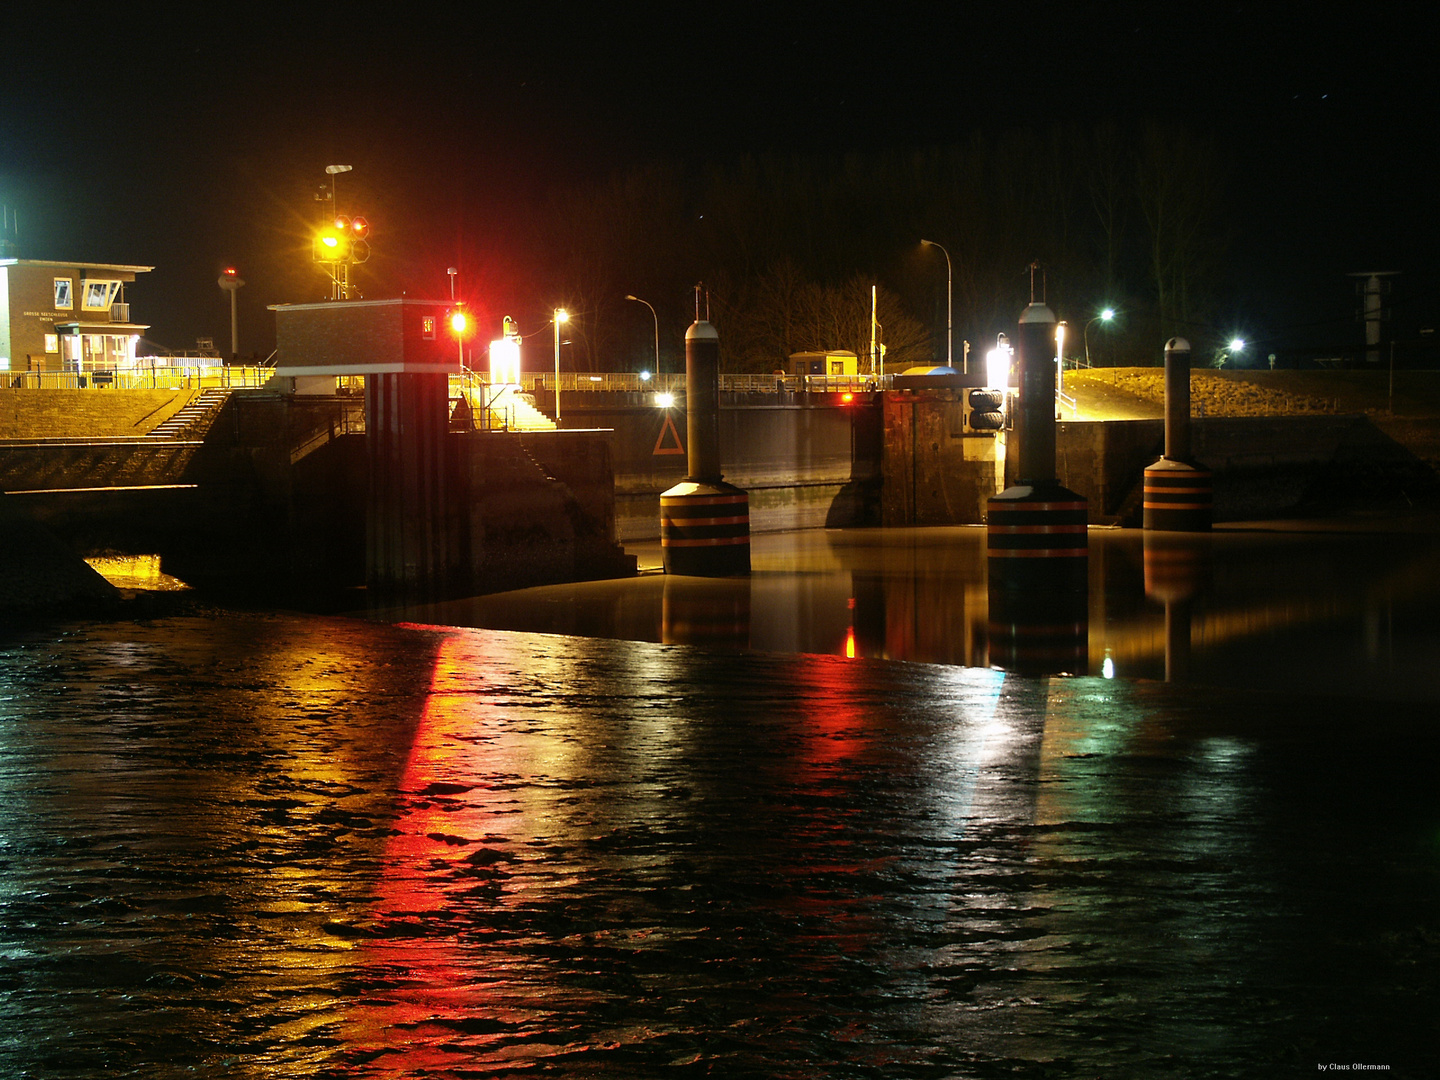 Einfahrt zur großen Seeschleuse in Emden in der Nacht